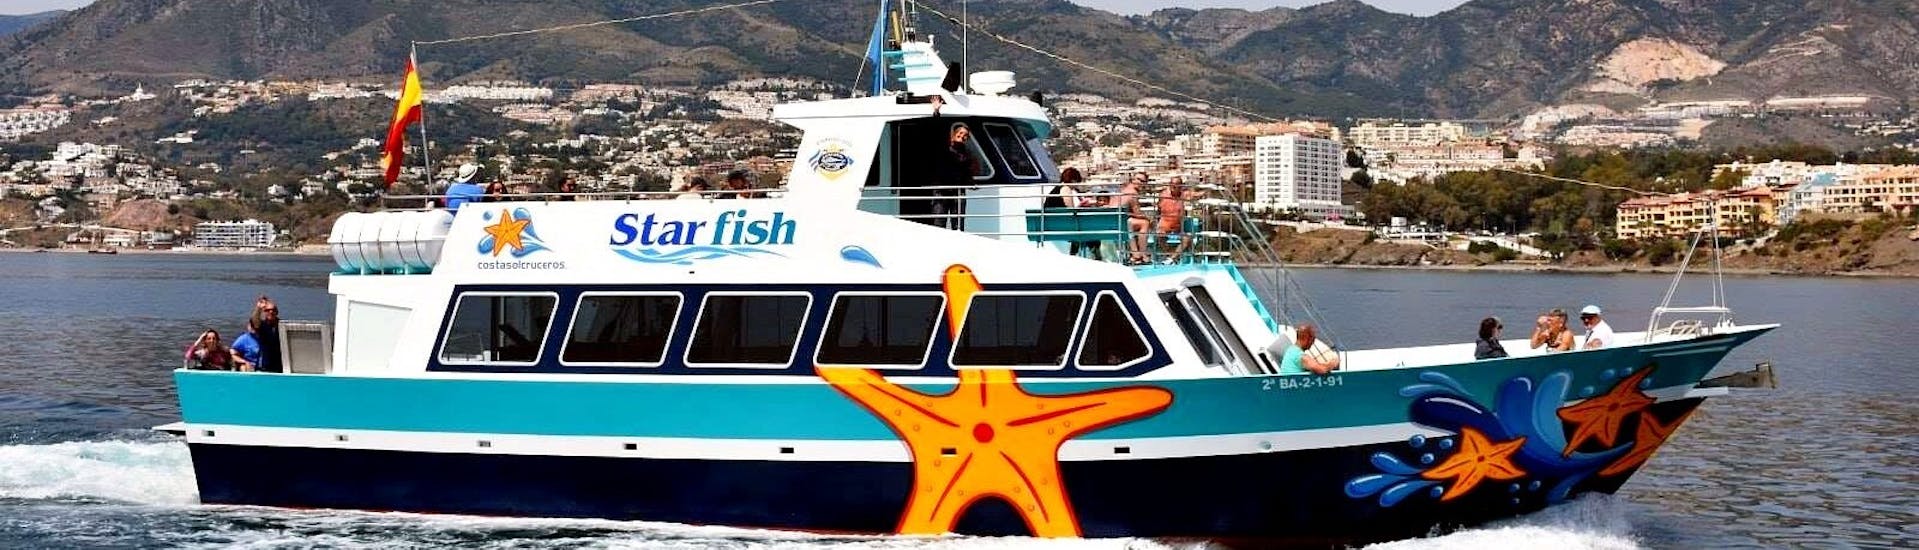 Il traghetto Starfish Two naviga sulle splendide acque blu del Mediterraneo durante un transfer in barca tra Benalmádena e Fuengirola con Costasol Cruceros.